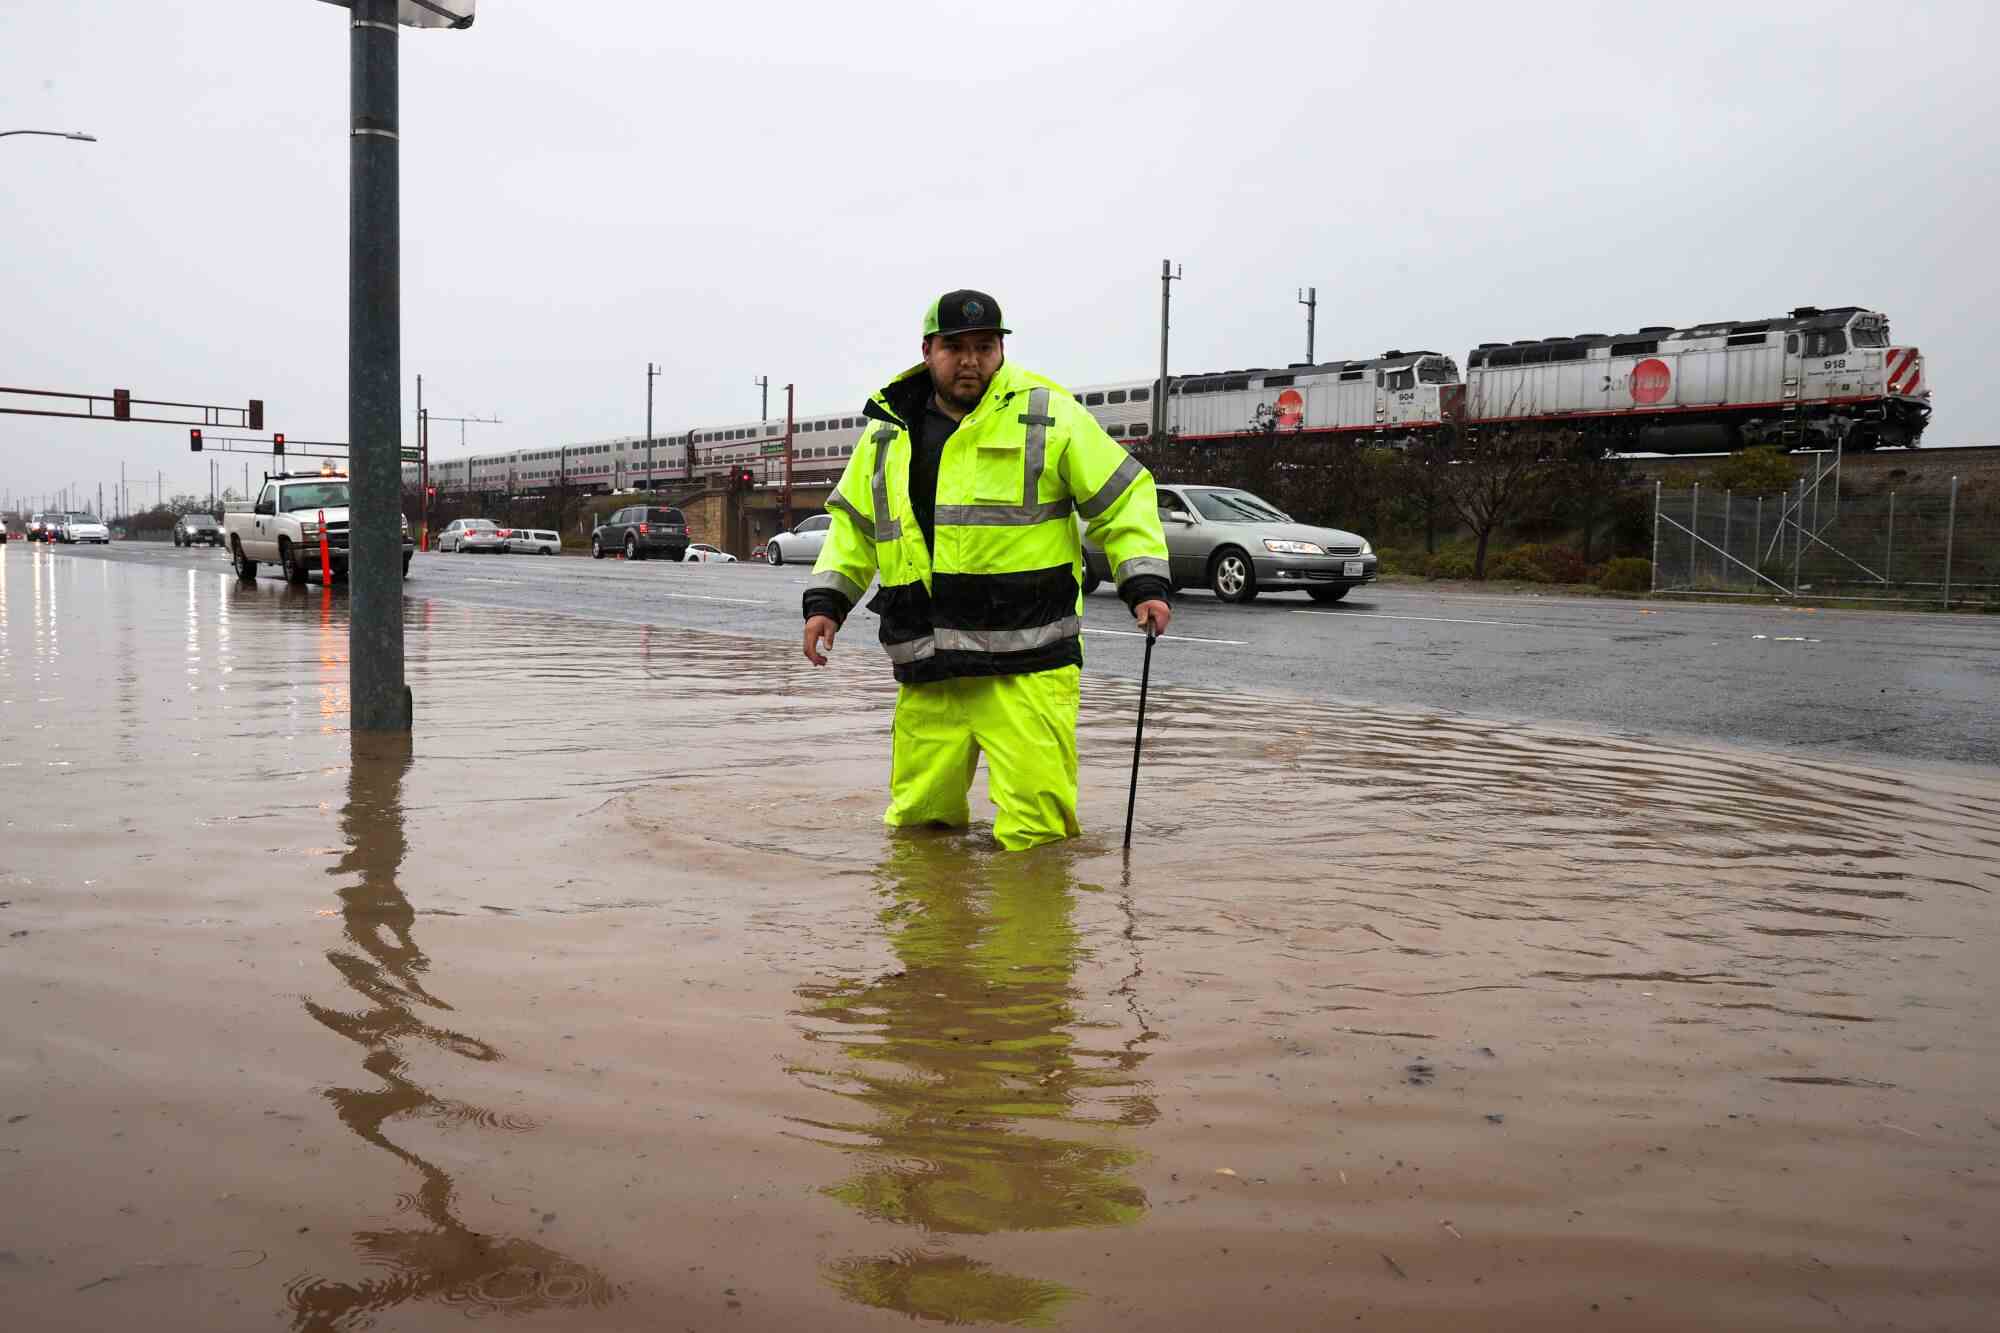 Ein Mann mit neongrüner Jacke und Hose steht knietief im schlammigen Hochwasser, während hinter ihm ein Auto und ein Zug vorbeifahren.